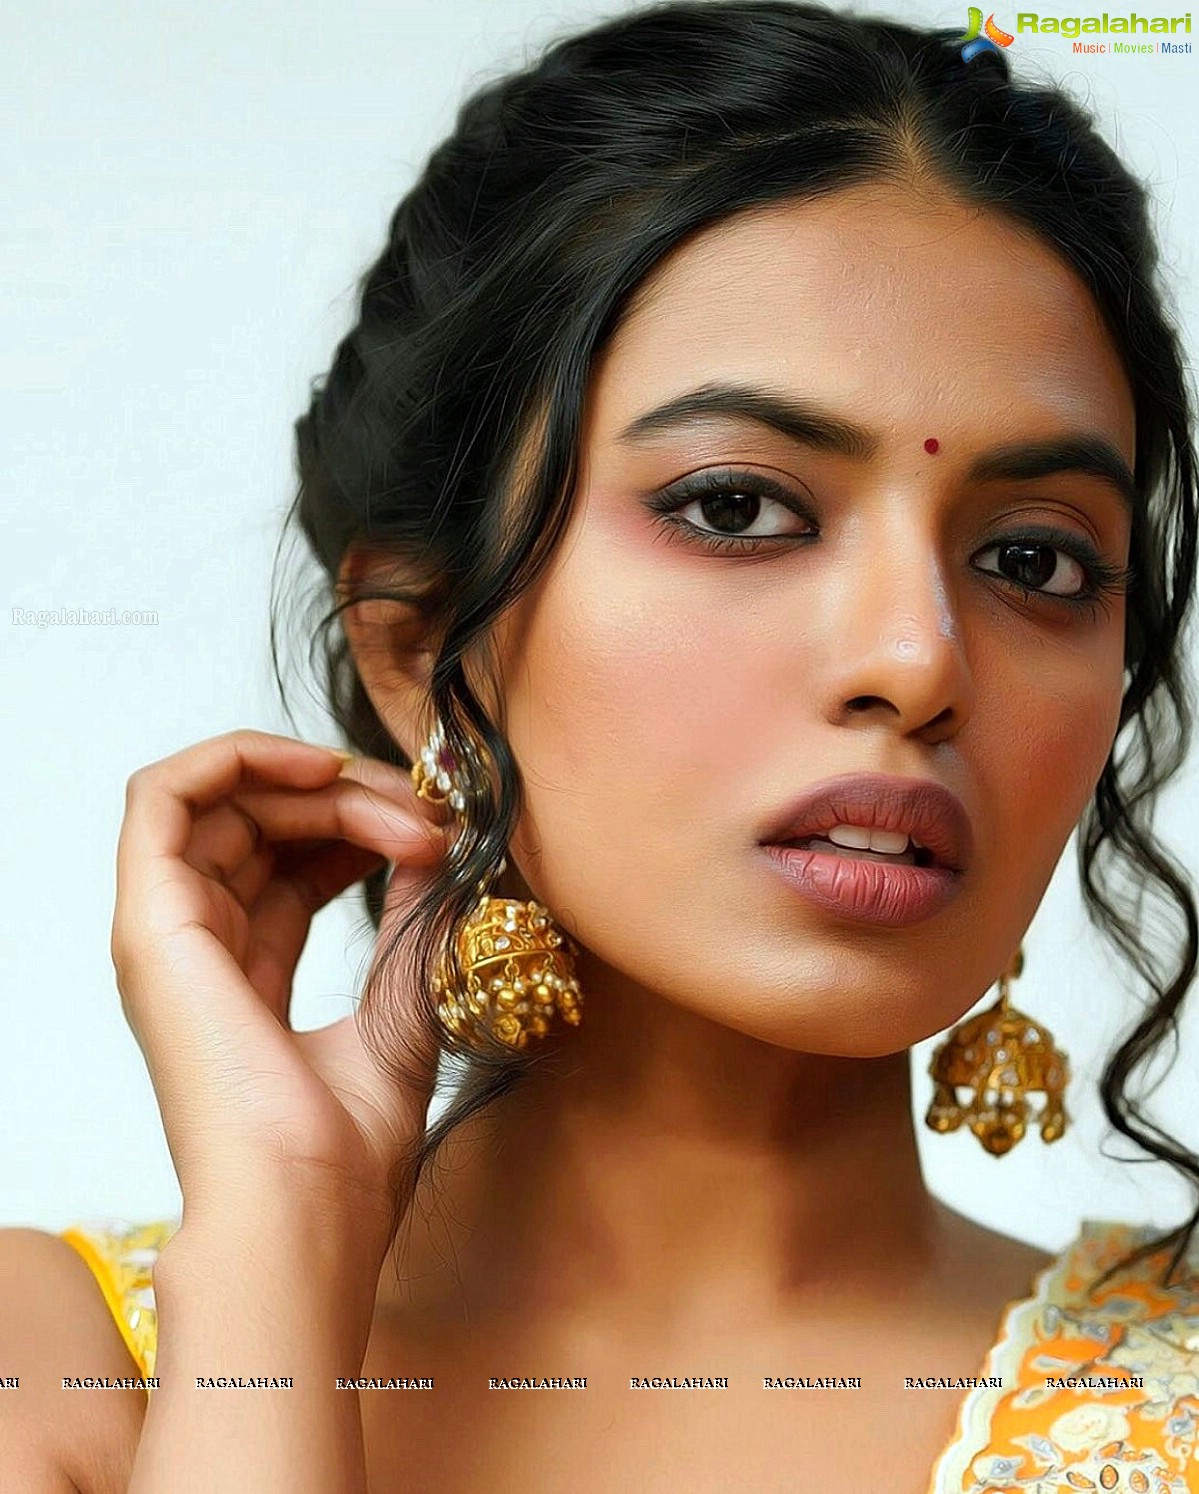 Shivani Rajasekhar Latest Photoshoot Images - Photo Gallery